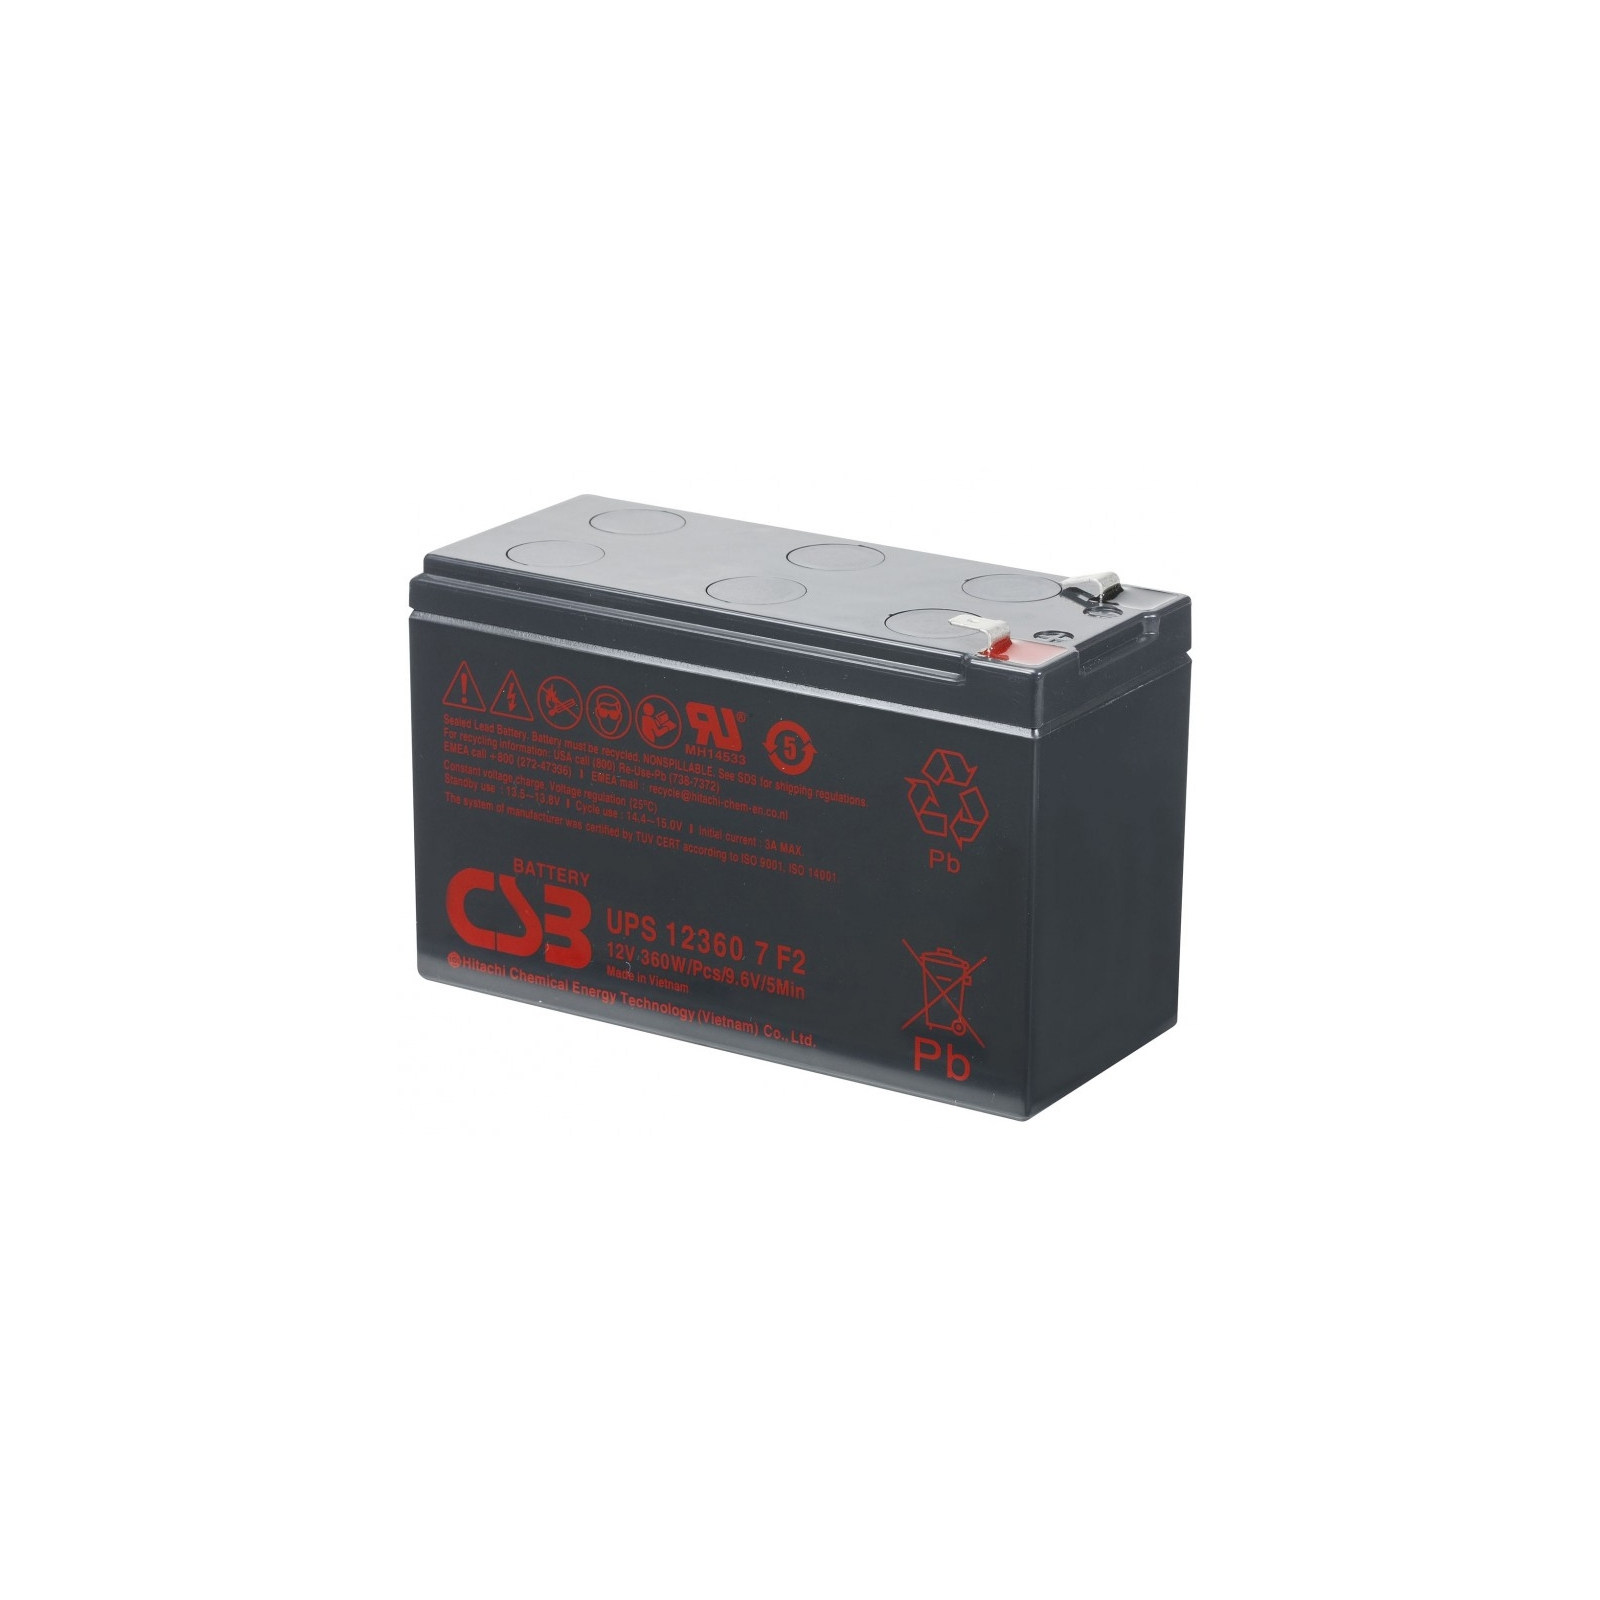 Батарея к ИБП CSB UPS12360, 12В 7.5 Ач (UPS12360)